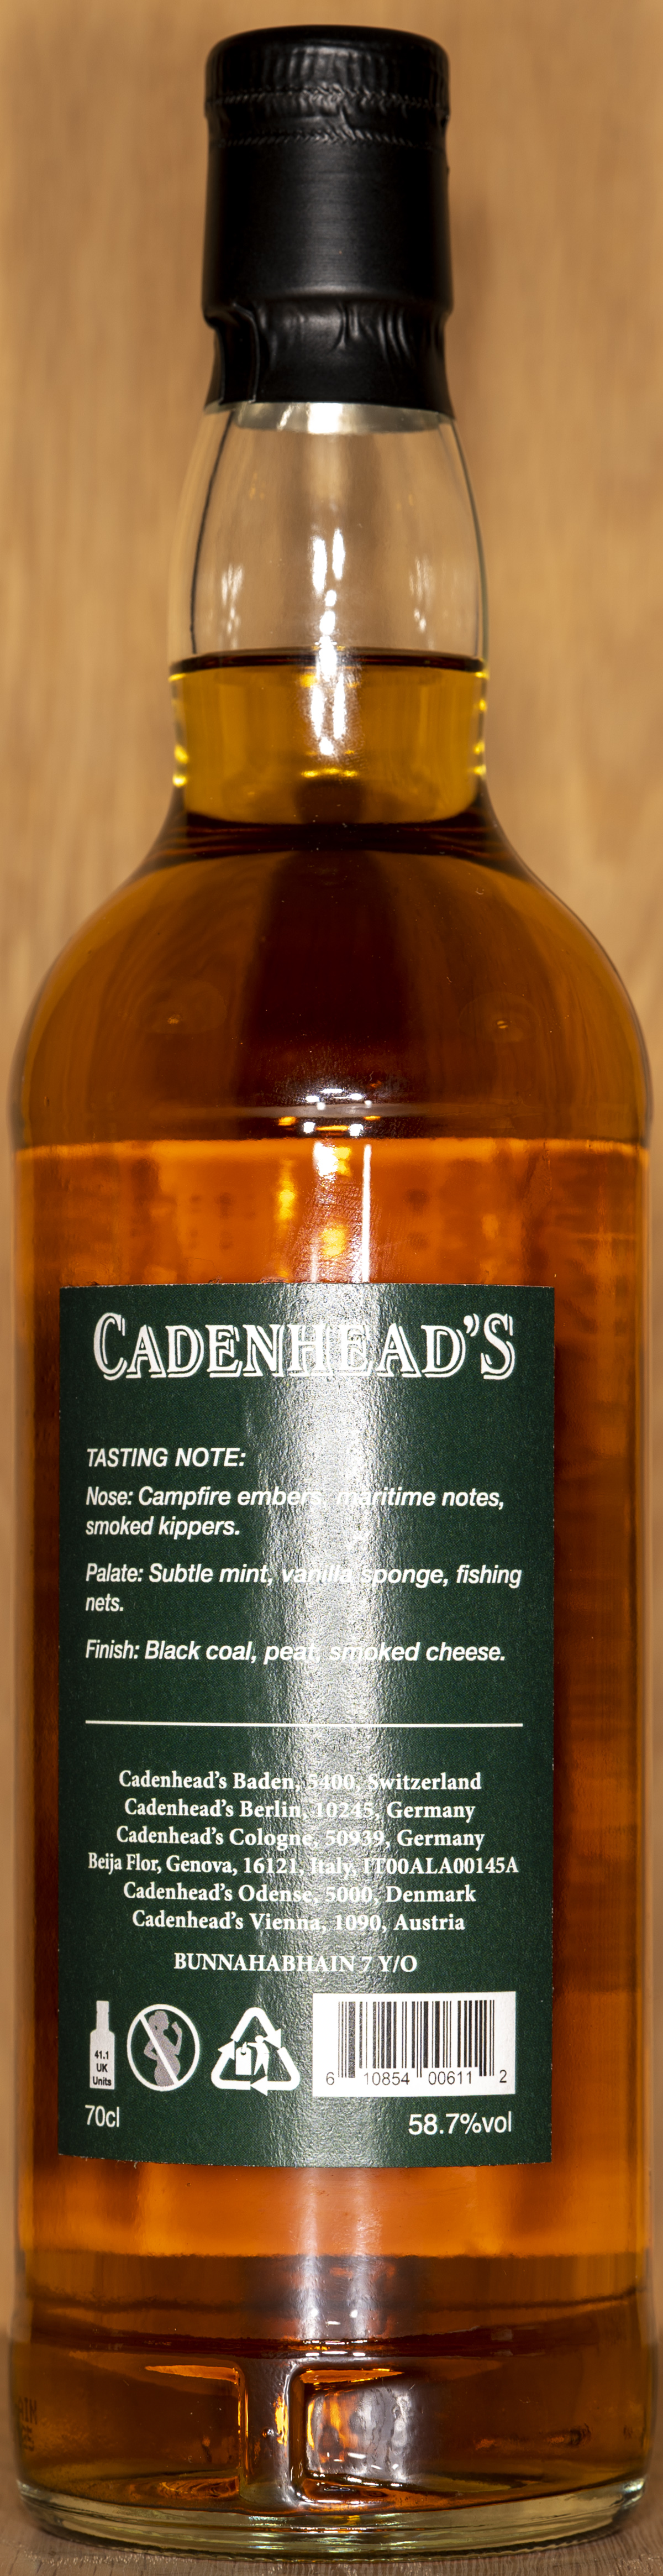 Billede: DSC_5028 - Cadenheads Authentic Collection Bunnahabhain 7 - bottle back.jpg